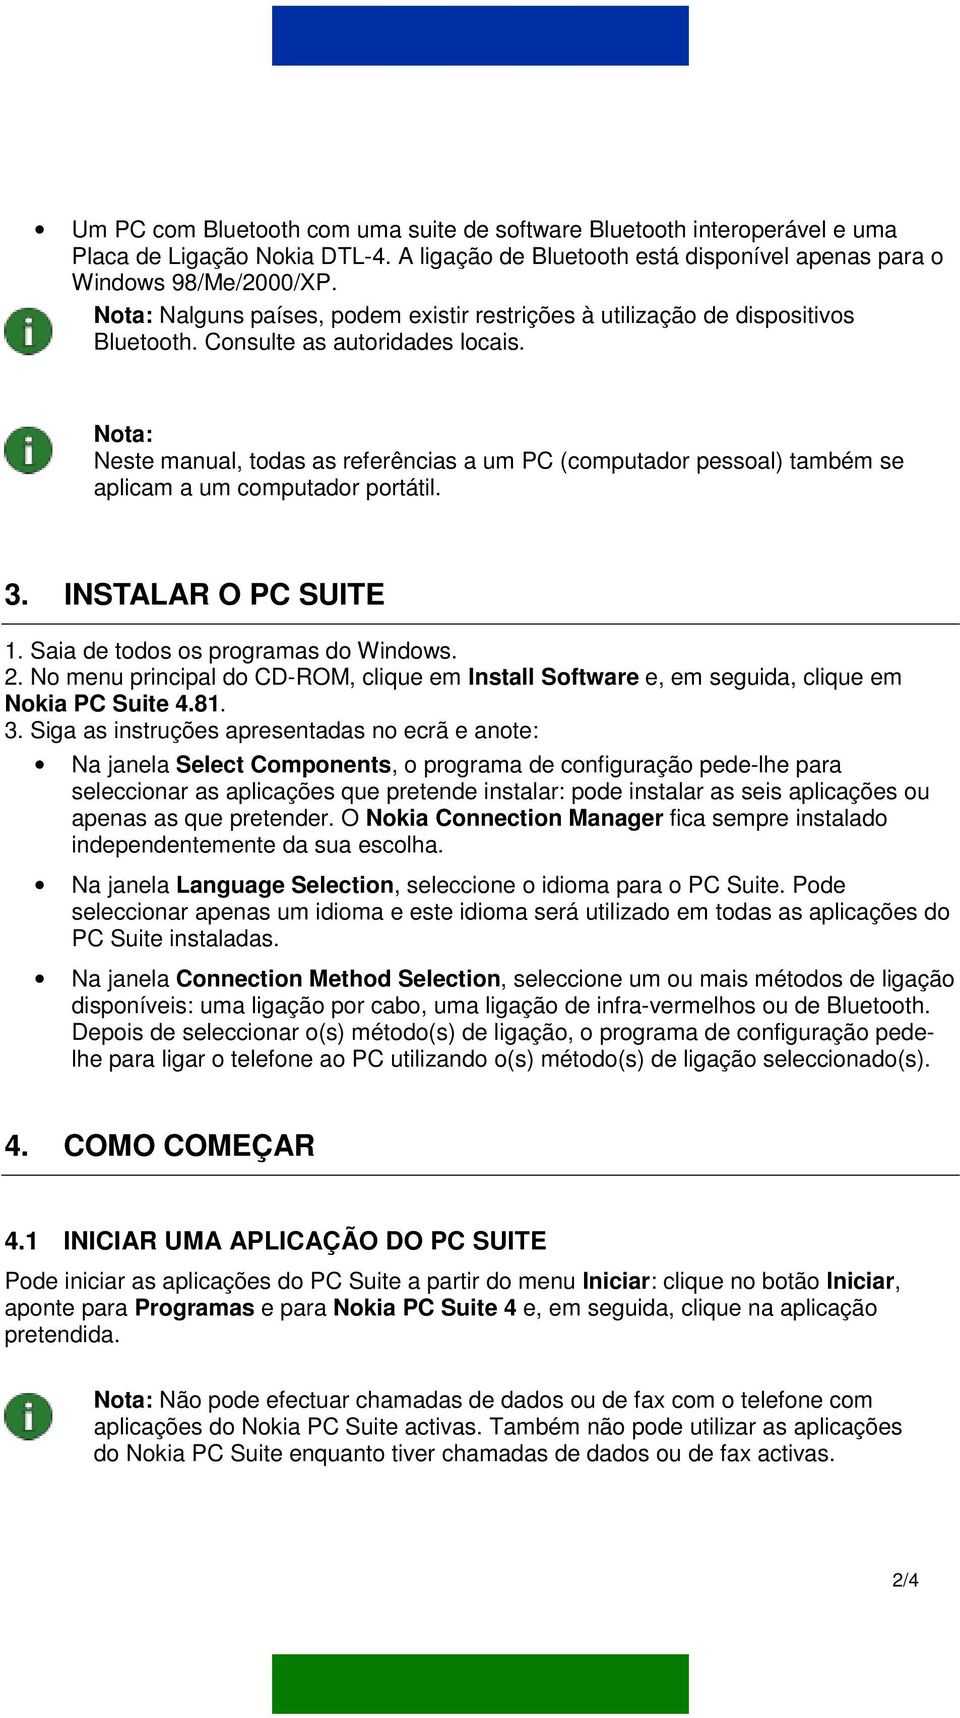 Nota: Neste manual, todas as referências a um PC (computador pessoal) também se aplicam a um computador portátil. 3. INSTALAR O PC SUITE 1. Saia de todos os programas do Windows. 2.